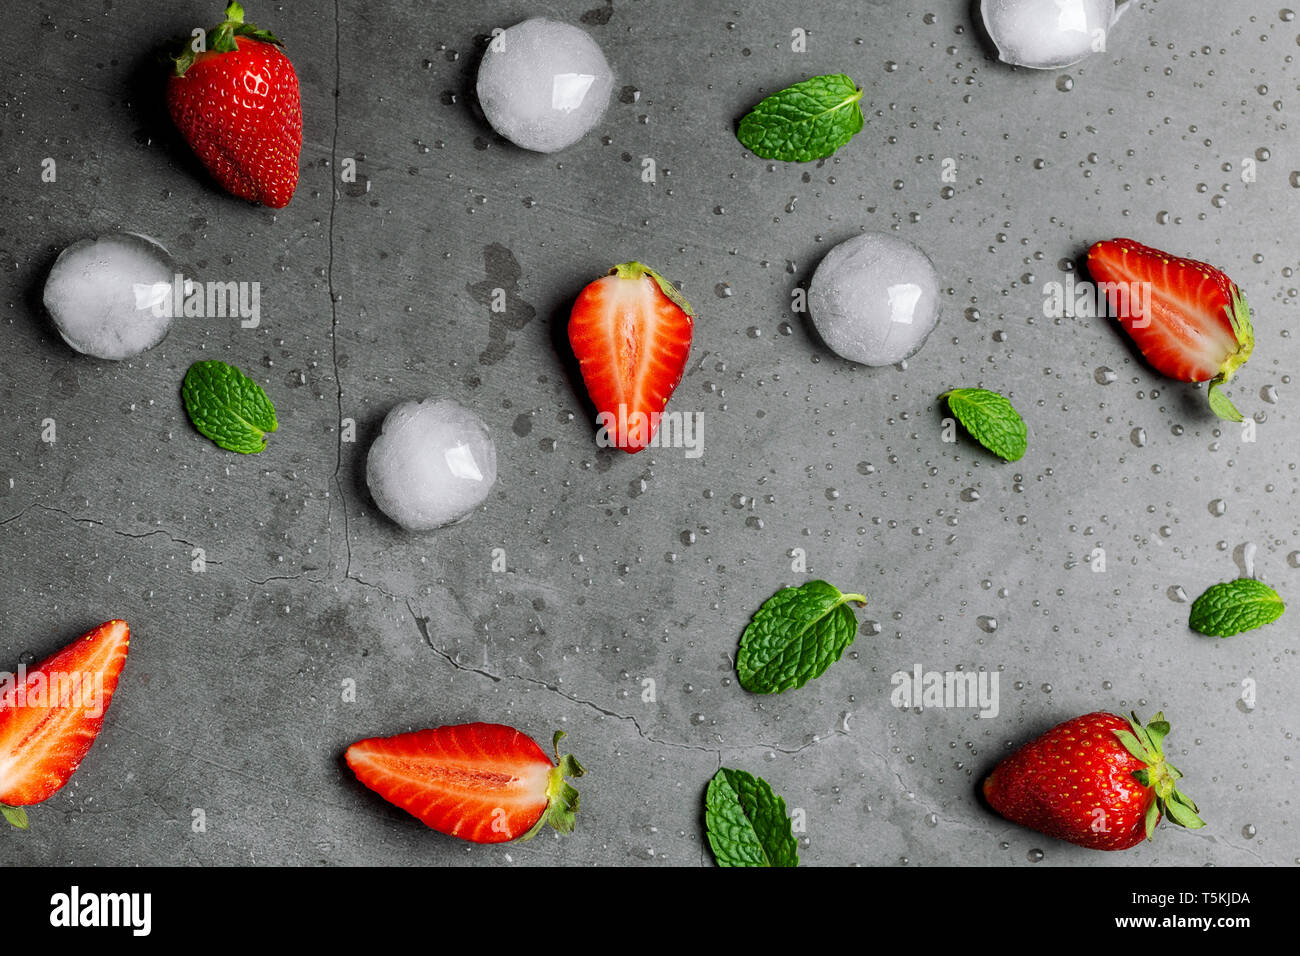 Les fraises, les cubes de glace et de feuilles de menthe sur du marbre noir Banque D'Images